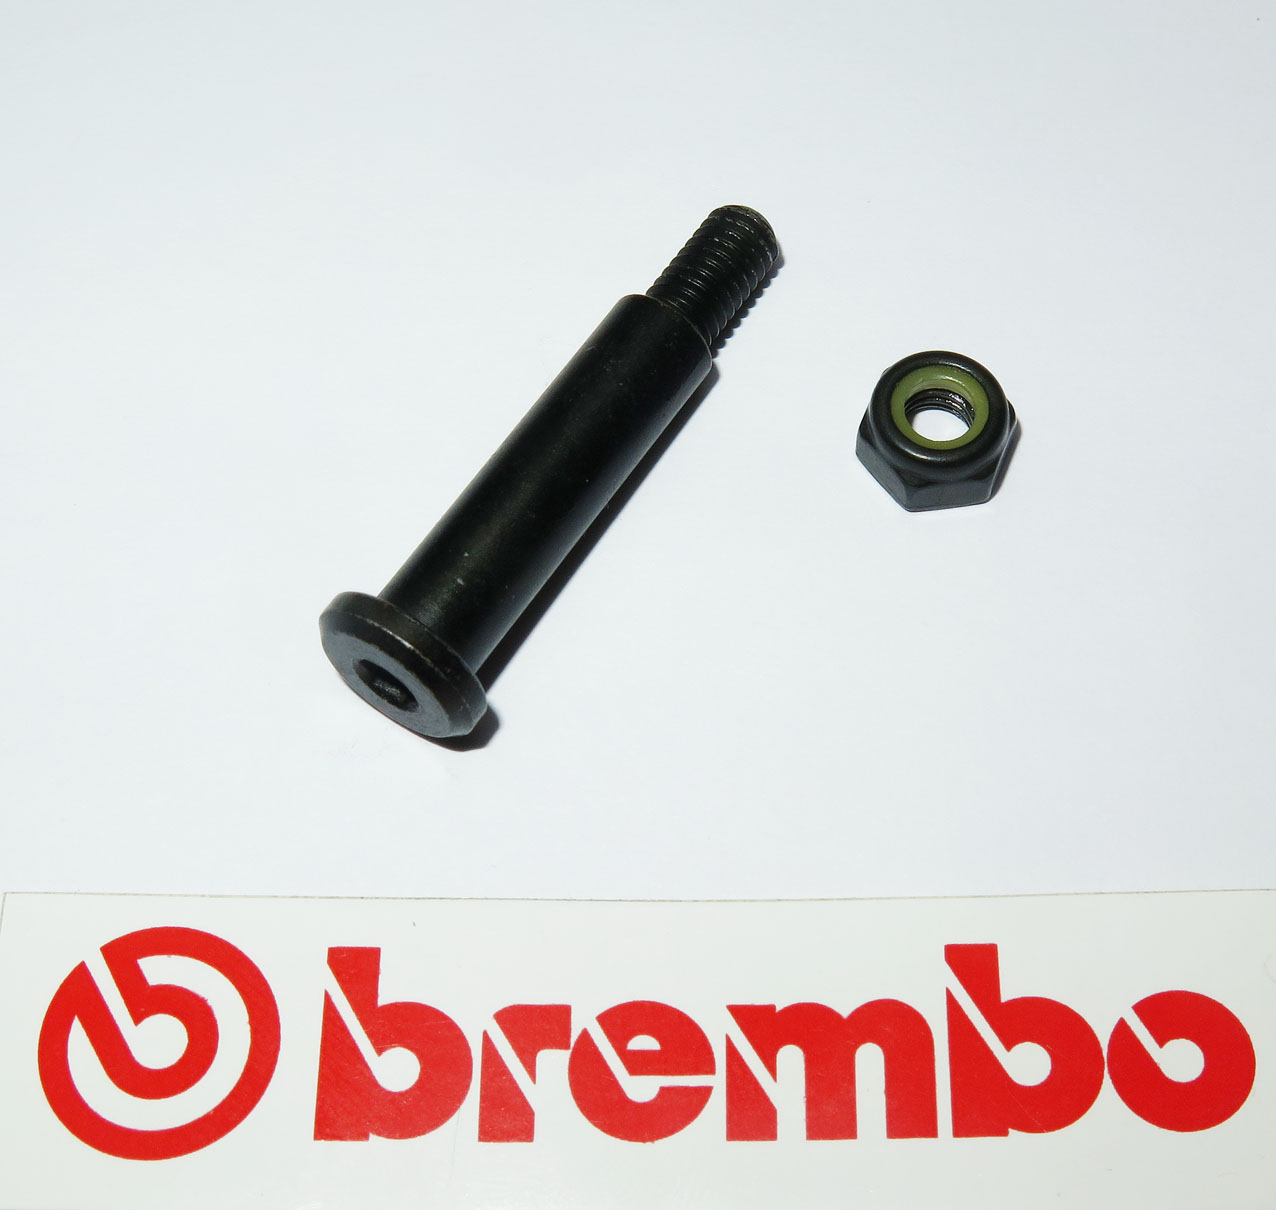 Brembo Sticker and Rubber Cap - Corsa Corta